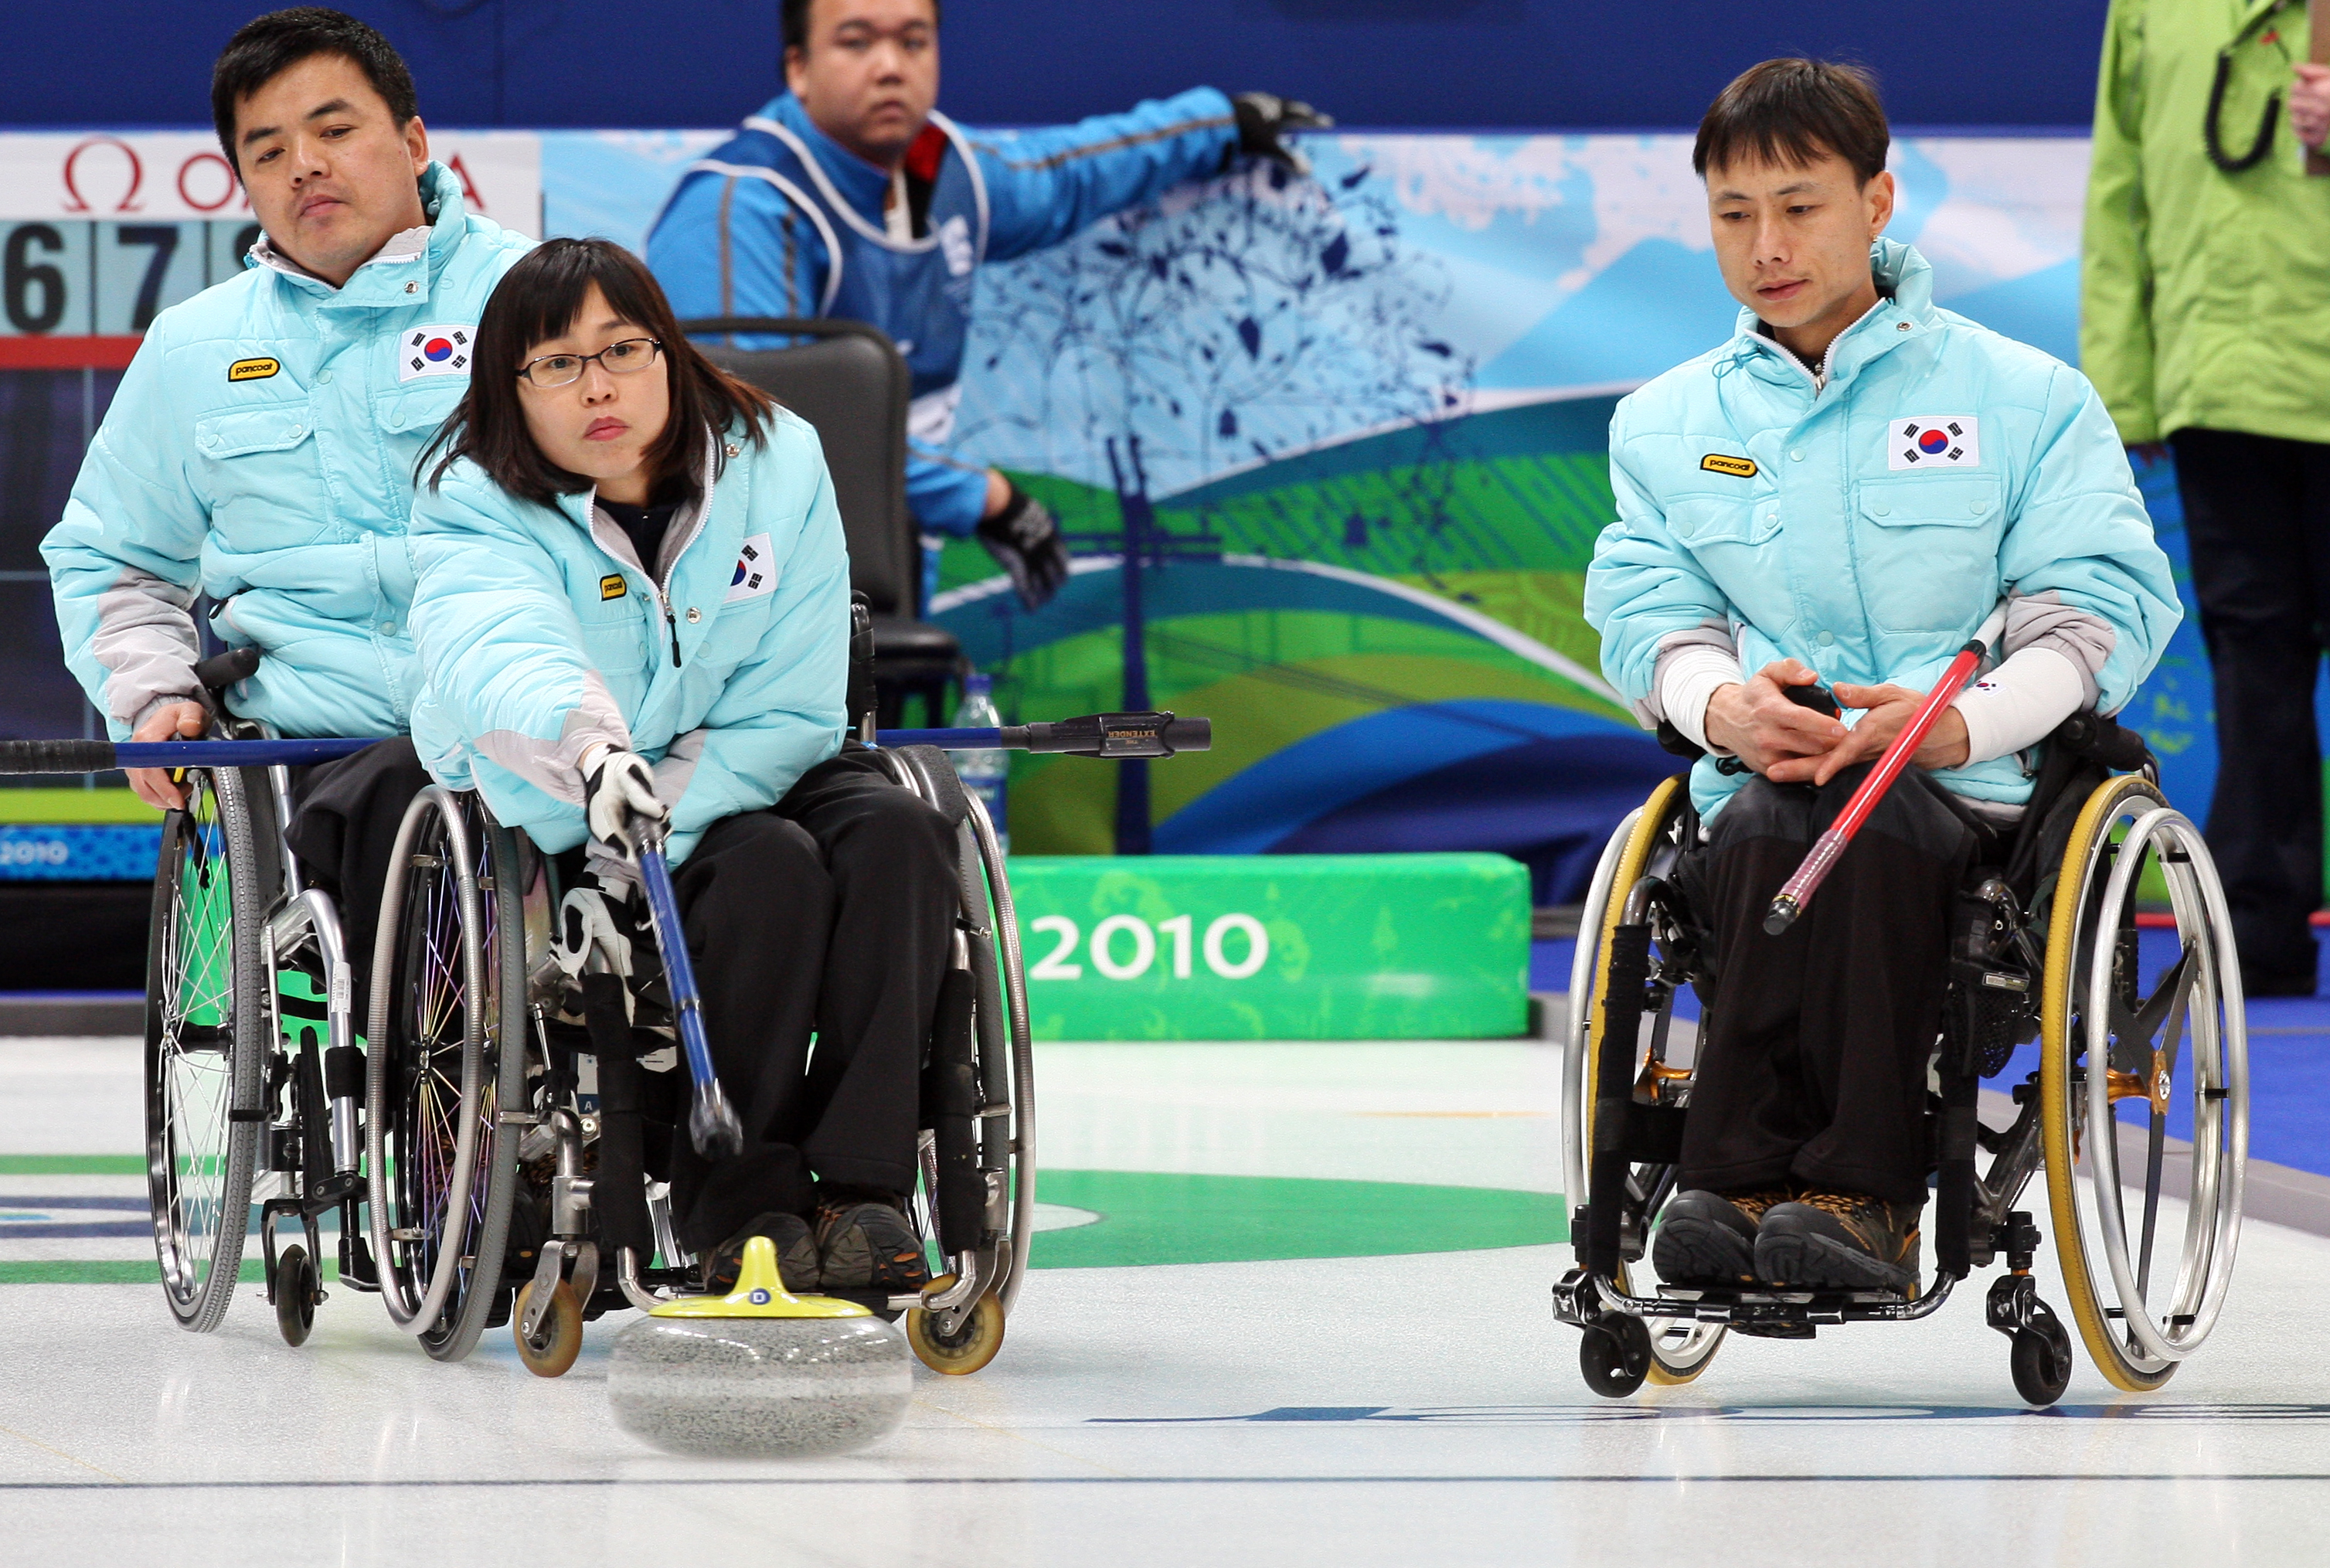 지난해 3월 15일 캐나다 밴쿠버에서 열린 동계패럴림픽 휠체어컬링 예선 한국과 일본 경기에서 슈터 강미숙(가운데)이 스톤을 밀어던지고 있다. 서울신문 포토라이브러리 